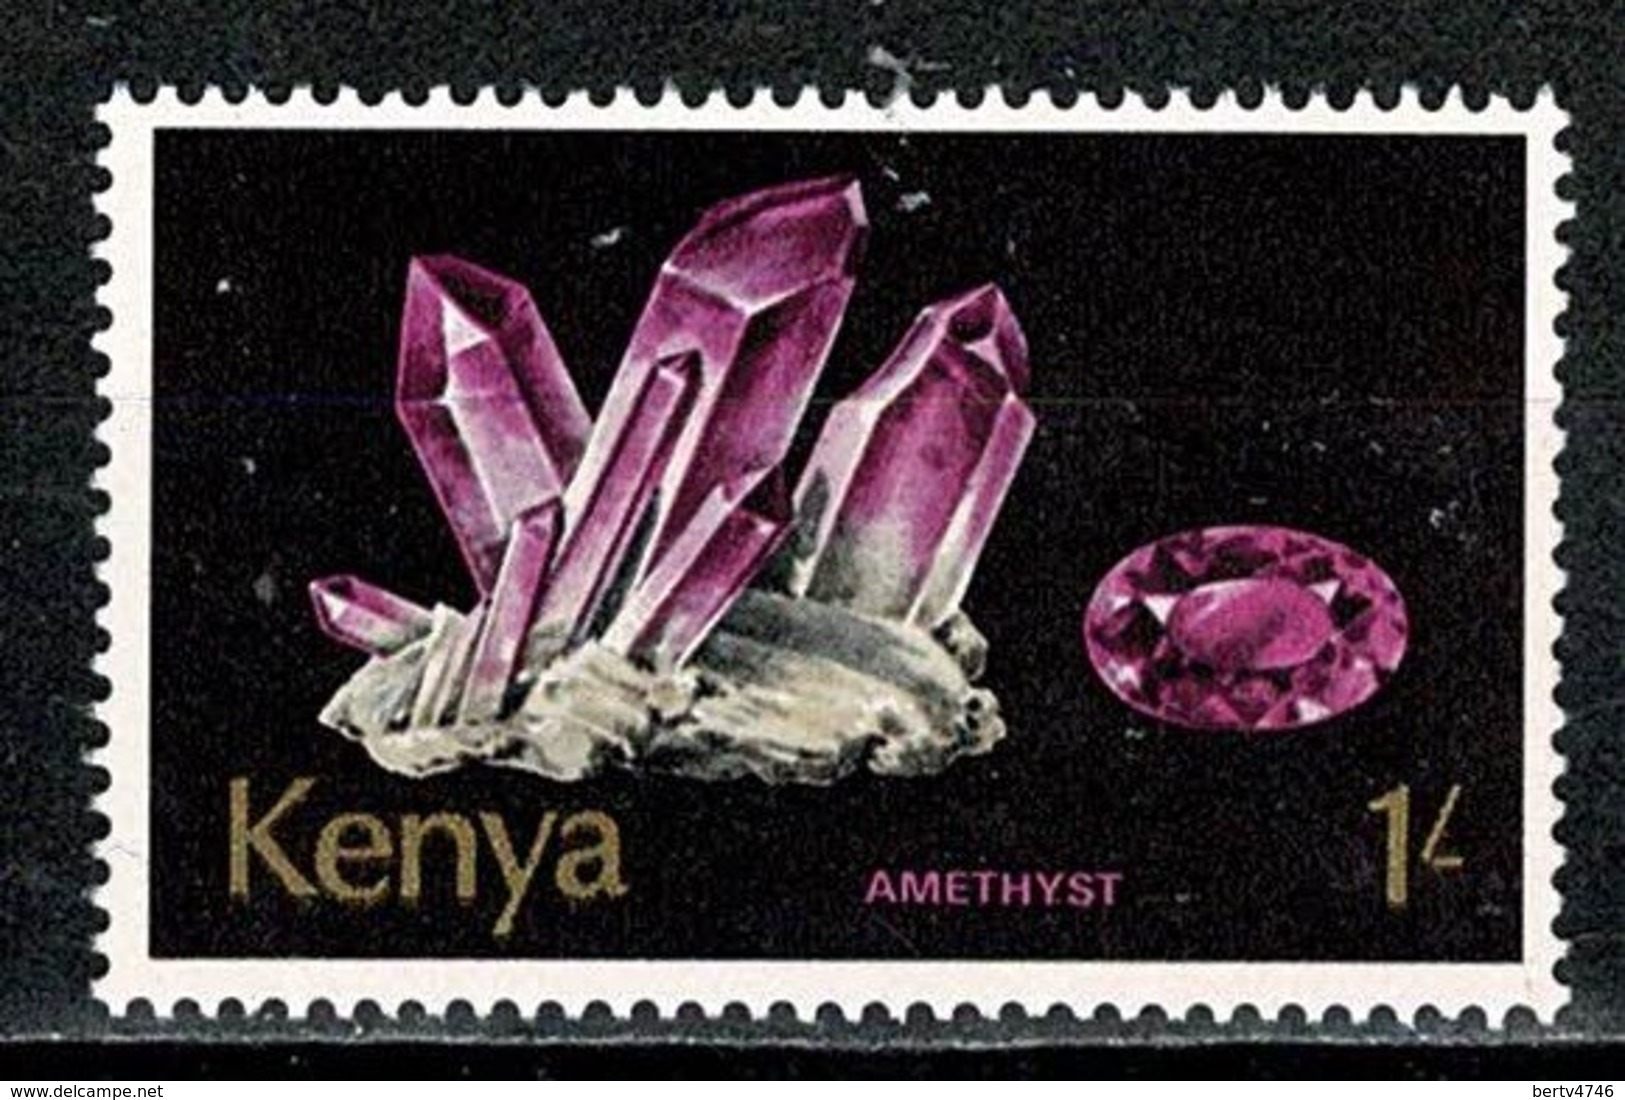 Kenya 1977   Yv 102**, Mi 103**, 1 Shilling  Minerals - Amethyst  MNH - Kenya (1963-...)